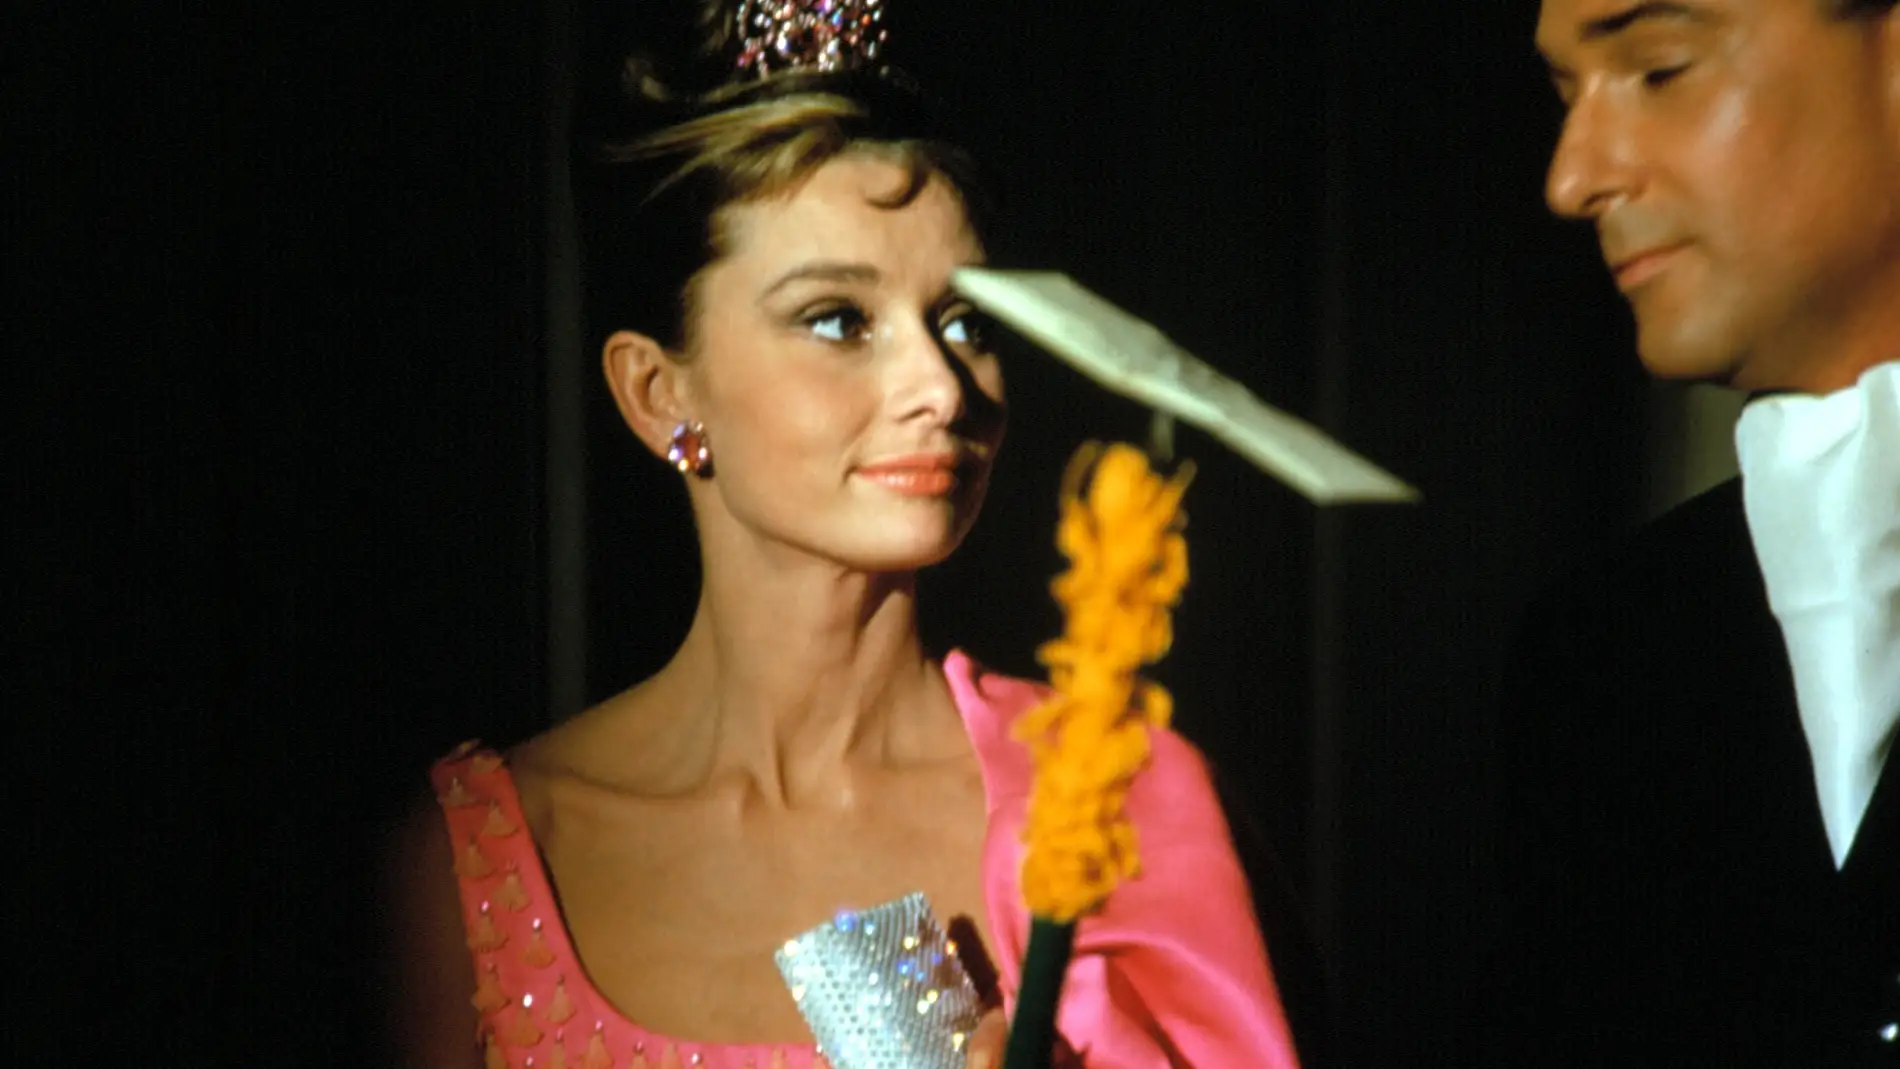 Fotograma de la película Desayuno con diamantes, con Audrey Hepburn y el vestido rosa